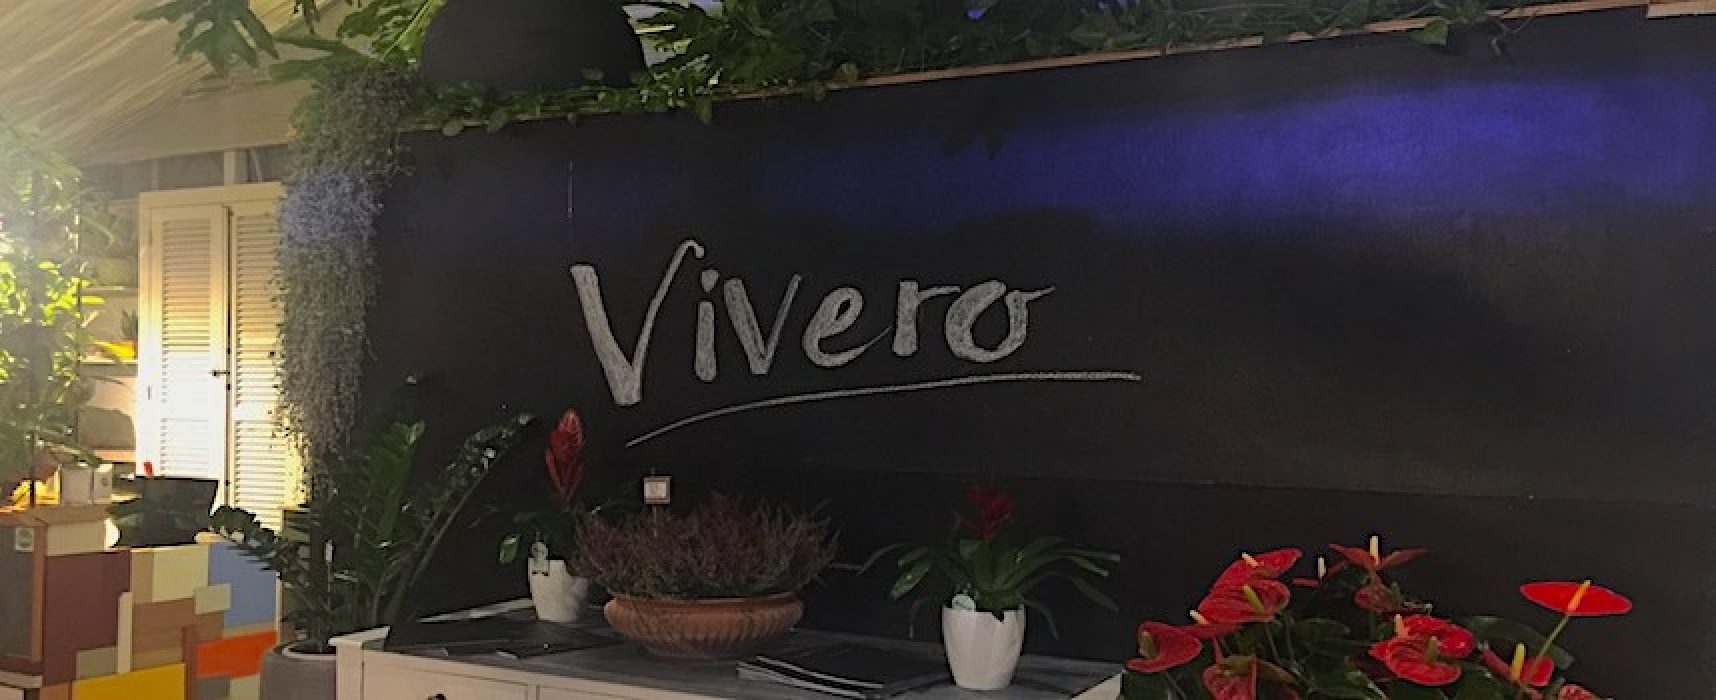 Vivero, stasera presentazione del libro dello scrittore Vito Verrastro